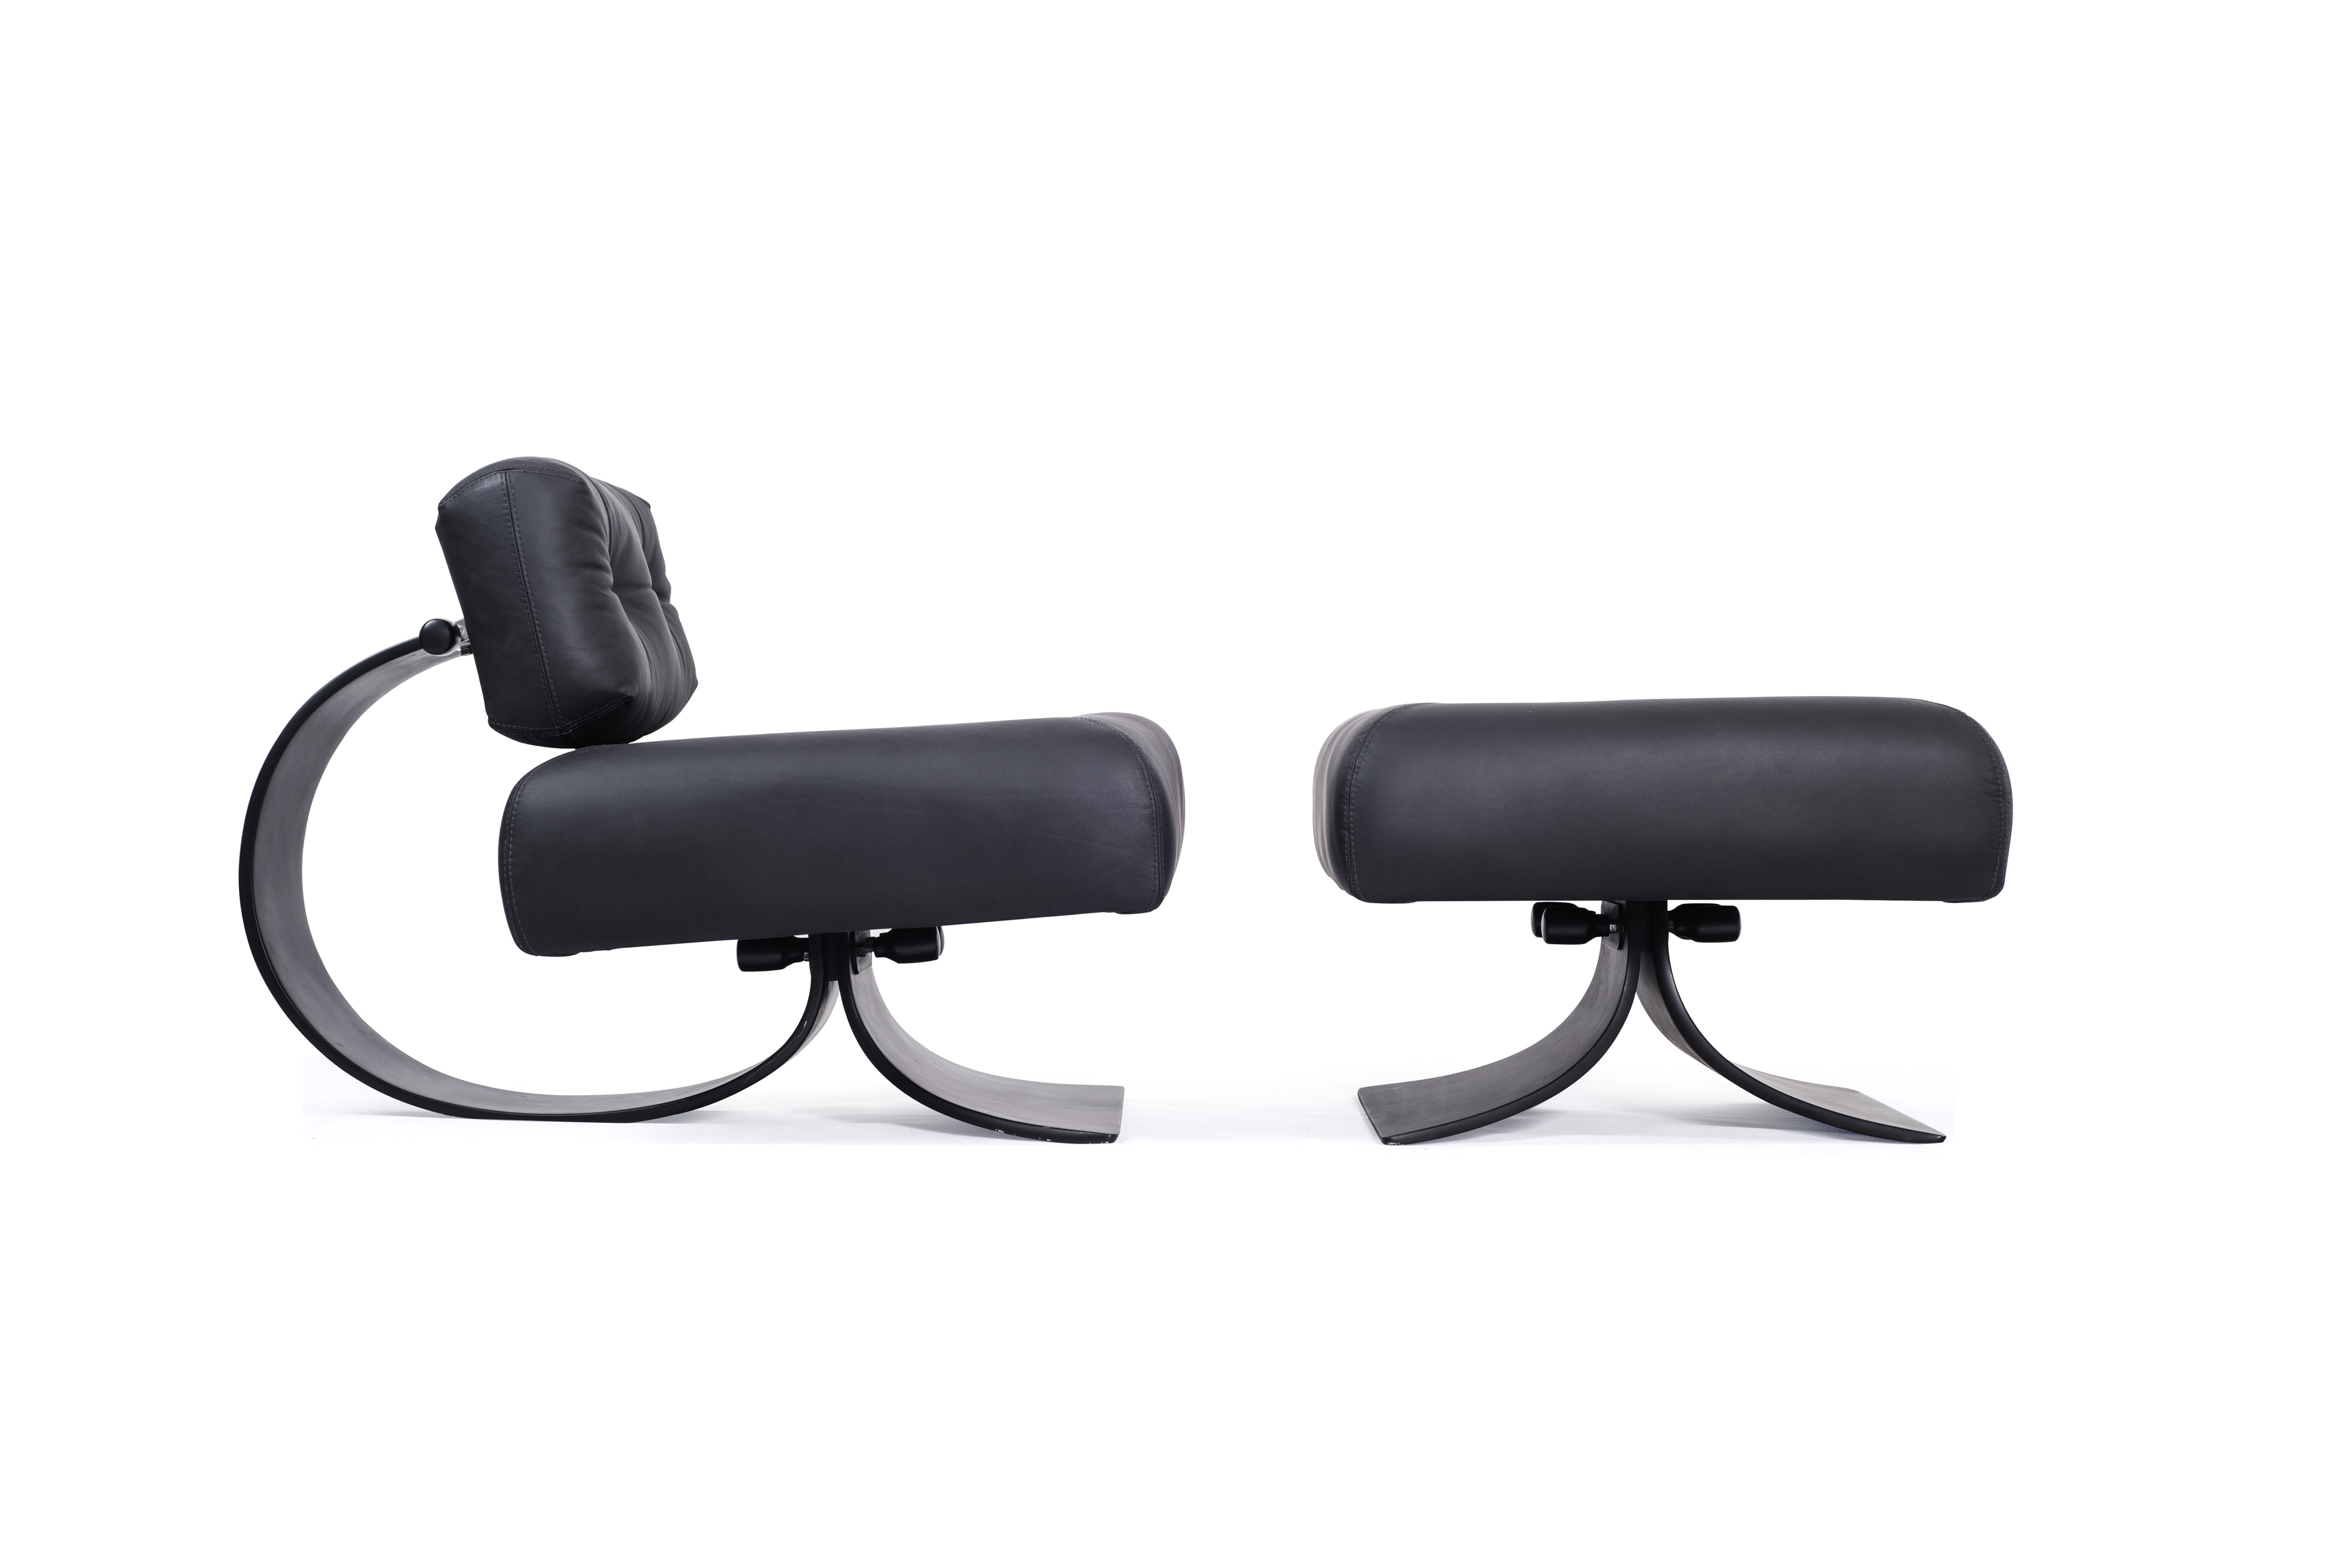 Easy Chair e Banco Alta, também criações de Oscar Niemeyer. Imagem: Divulgação.